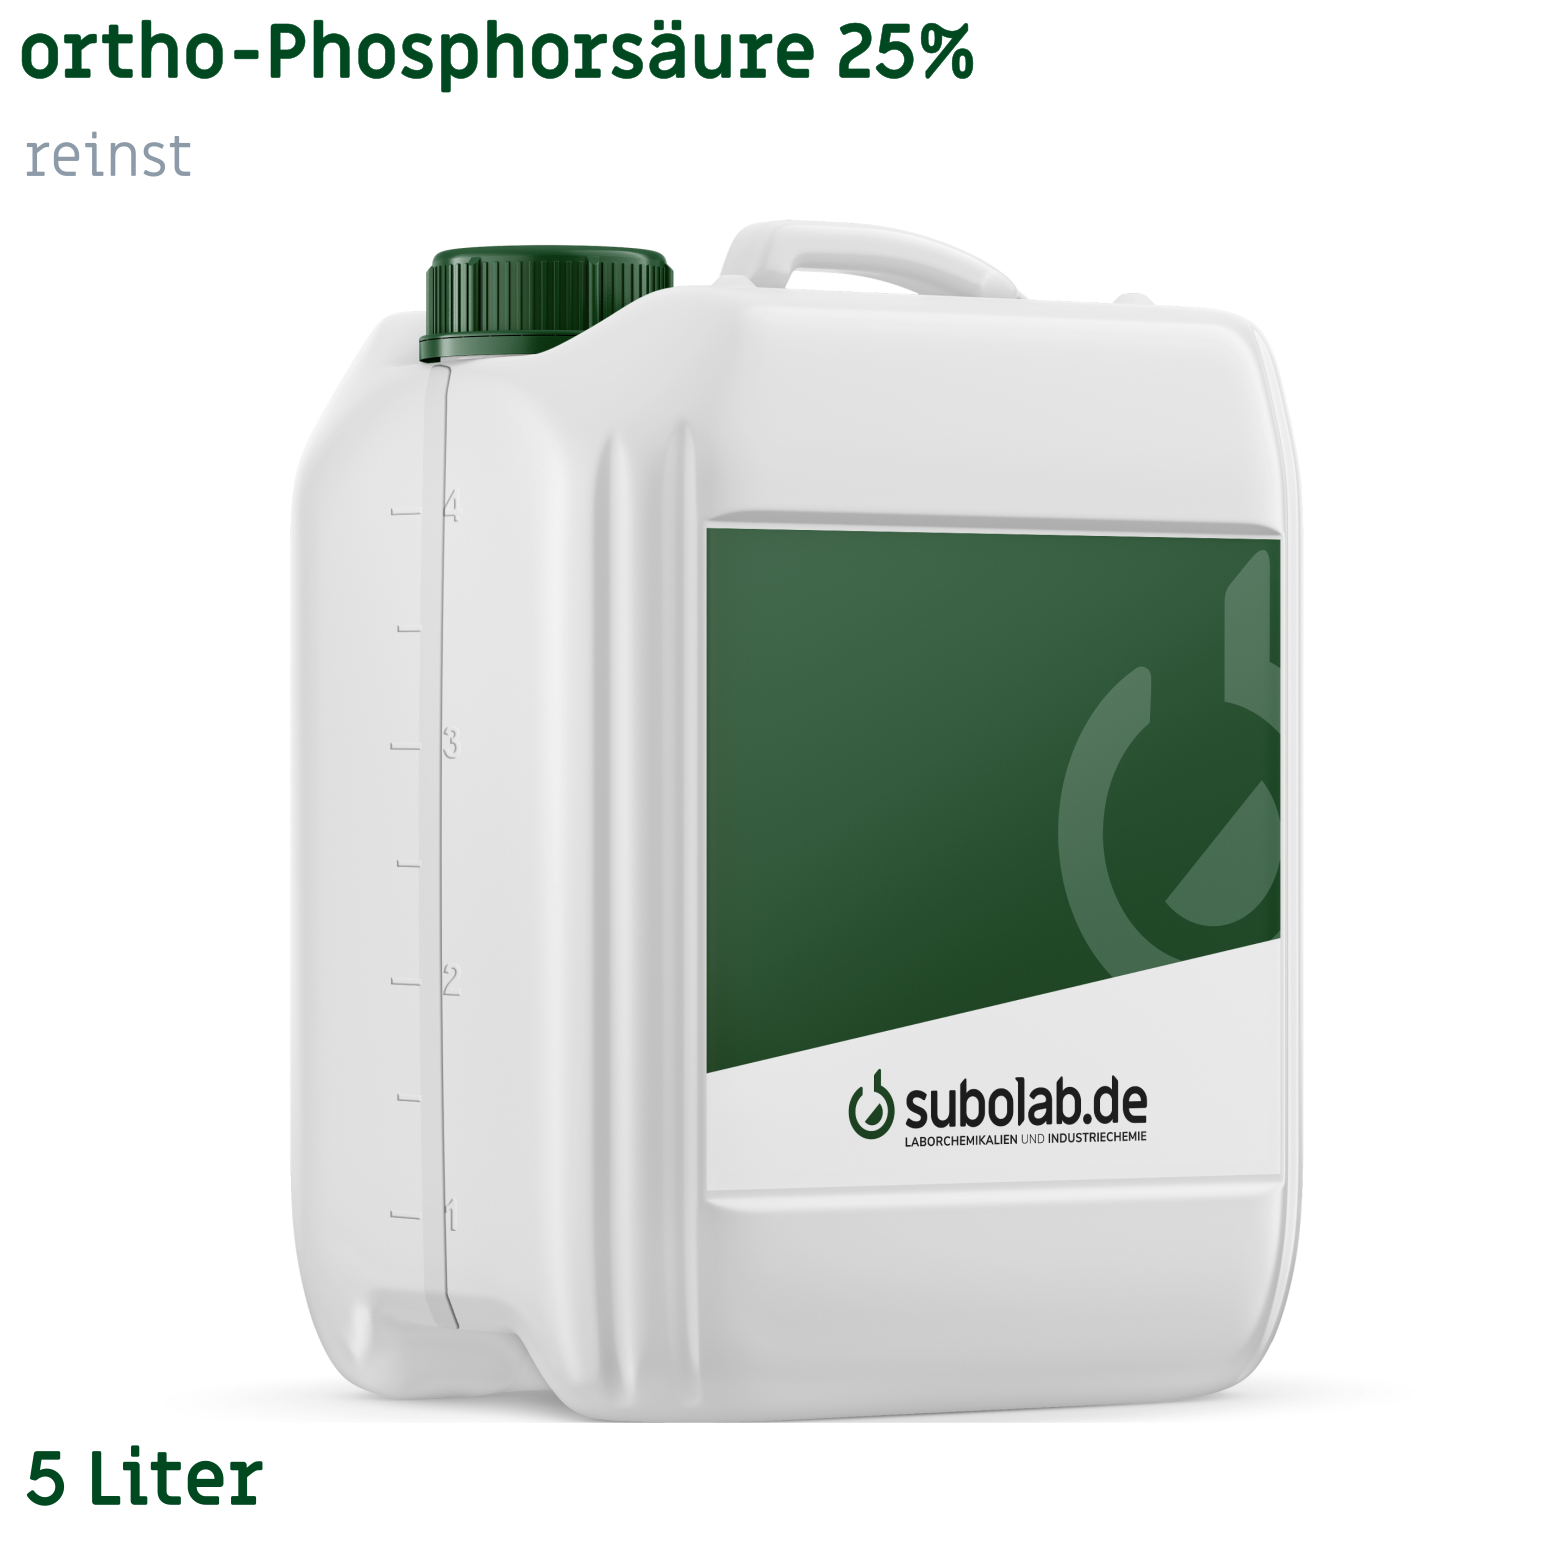 Bild von ortho-Phosphorsäure 25% reinst (5 Liter)